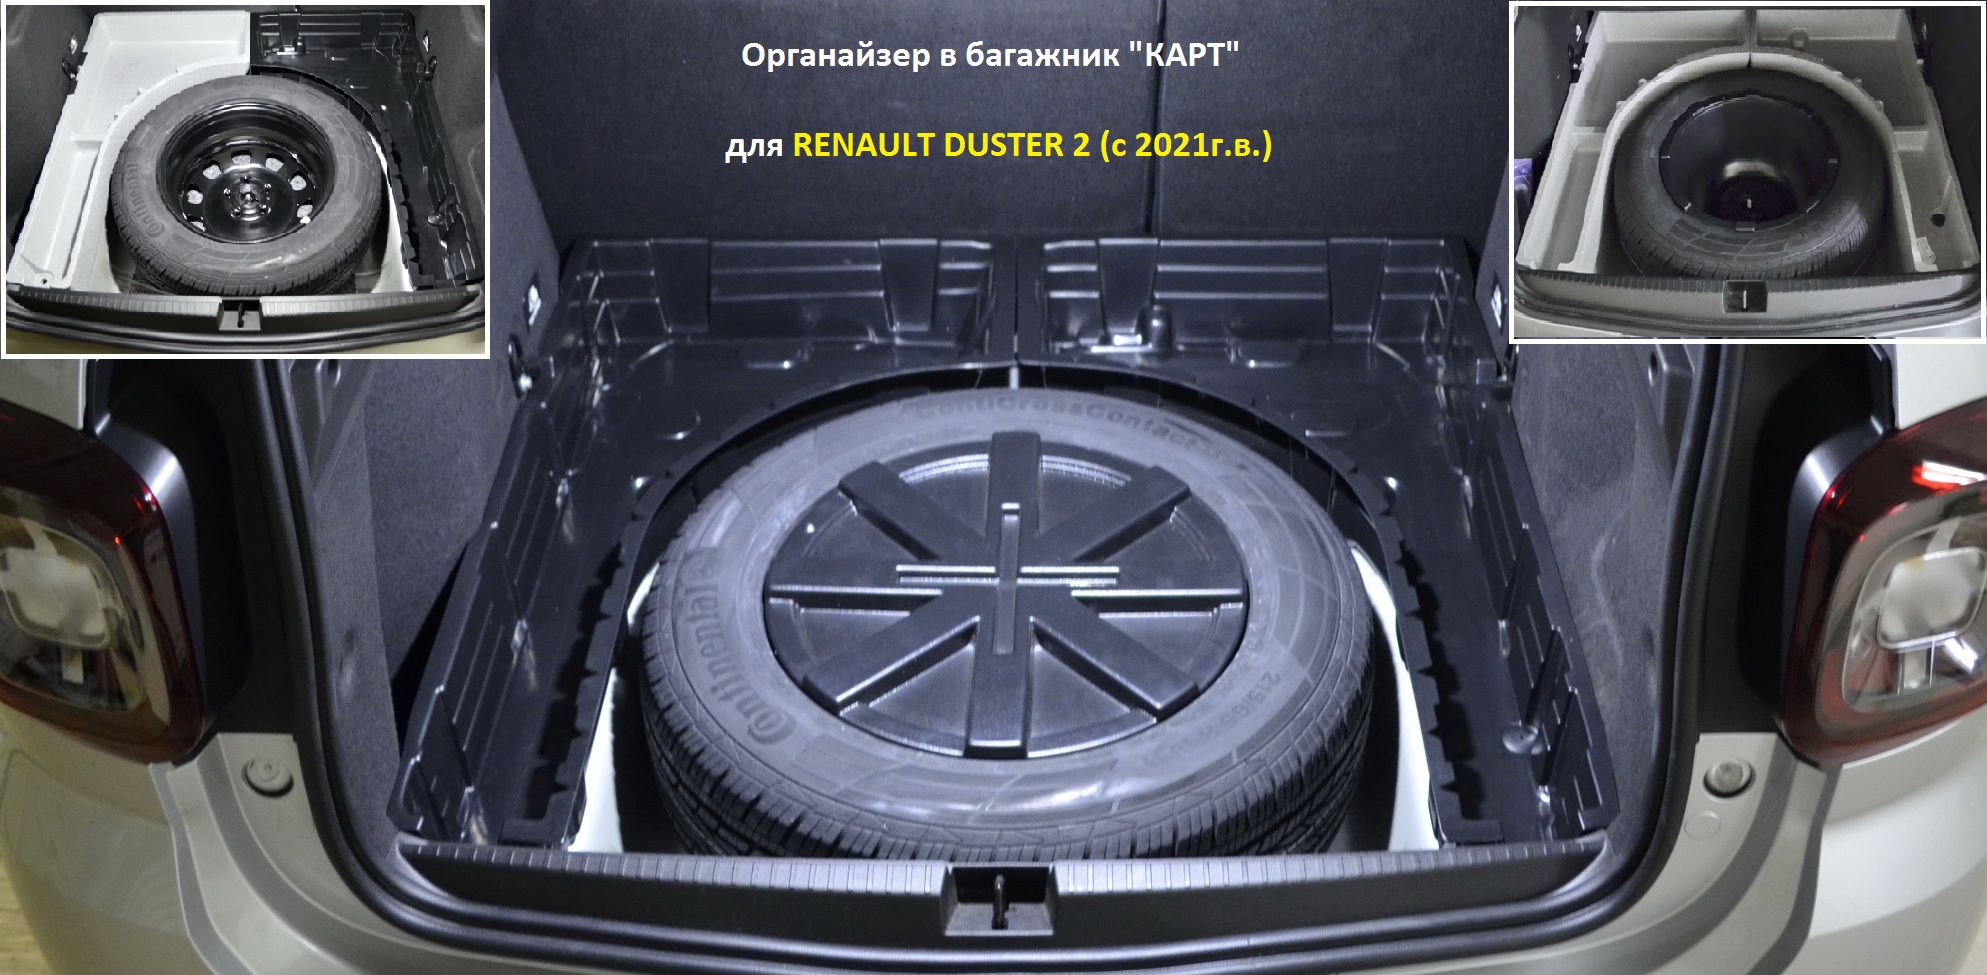 Органайзер в багажник "КАРТ" для Renault Duster 2 (с 2021 г.в.)